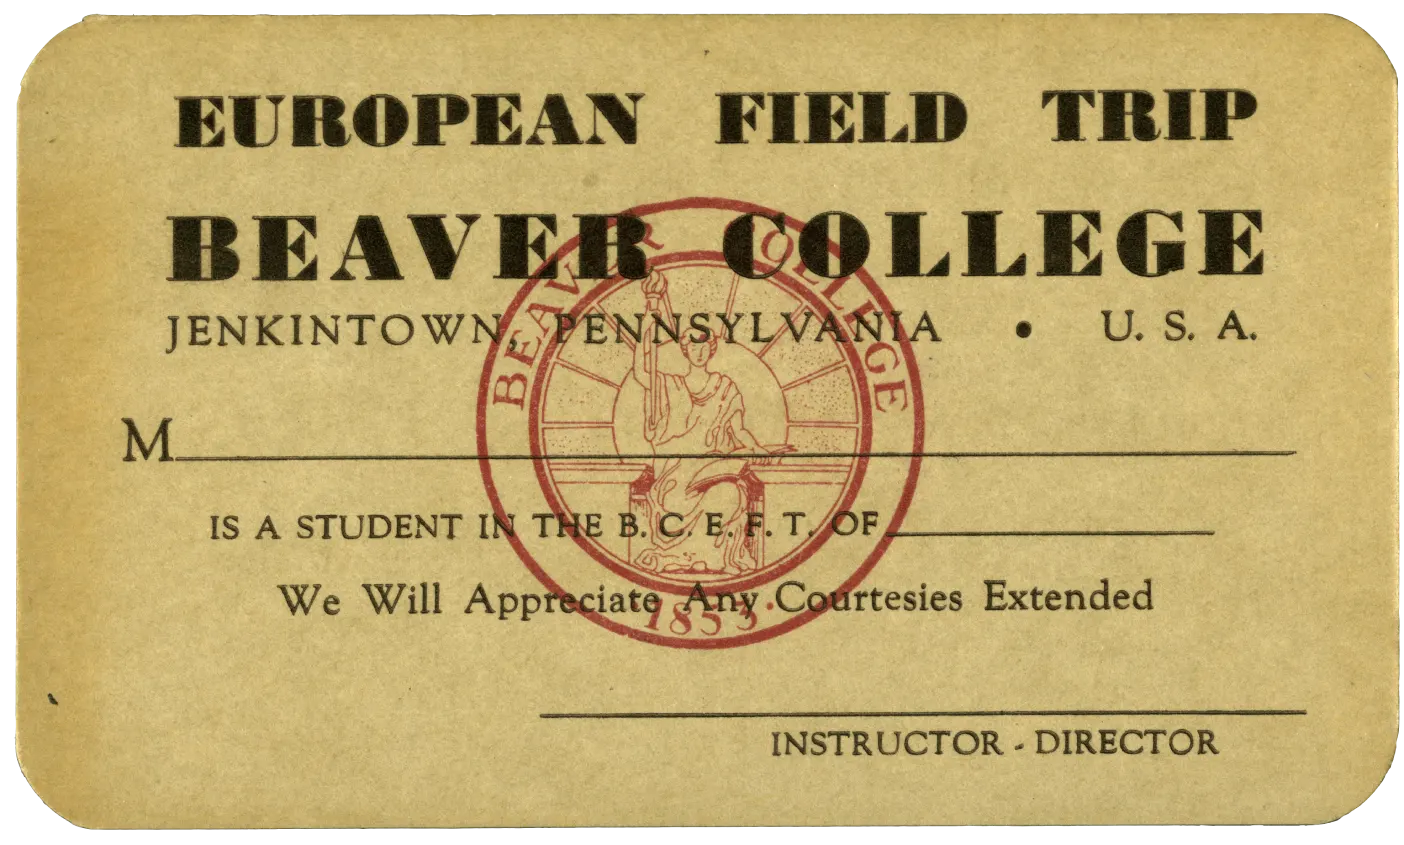 A Beaver College European field trip card.